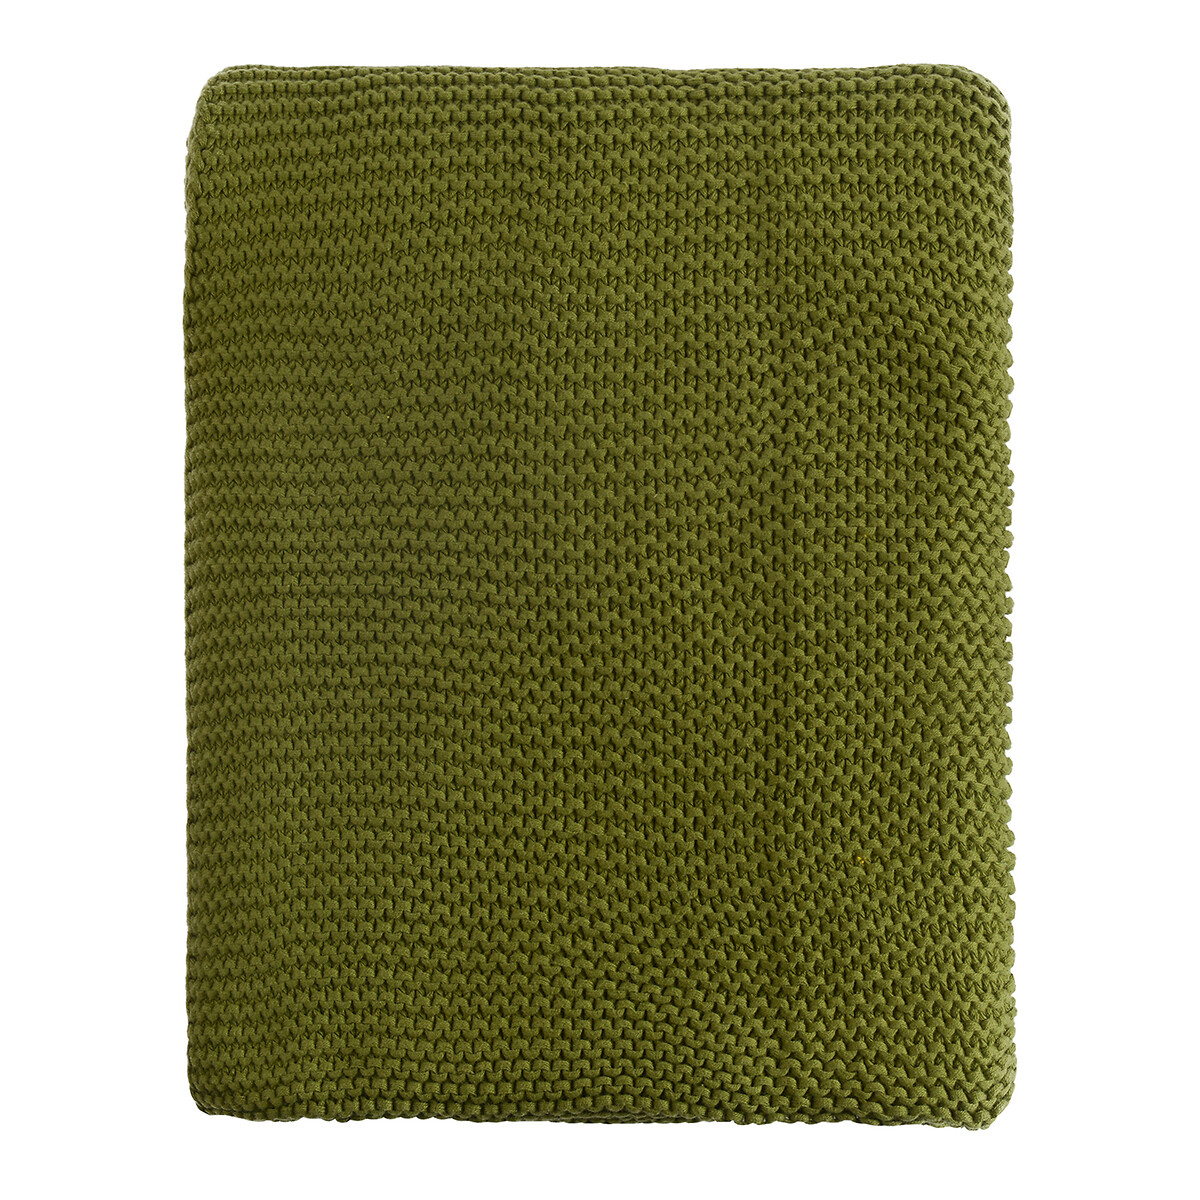 Плед Из хлопка жемчужной вязки Essential 130 x 180 см зеленый LaRedoute, размер 130 x 180 см - фото 1